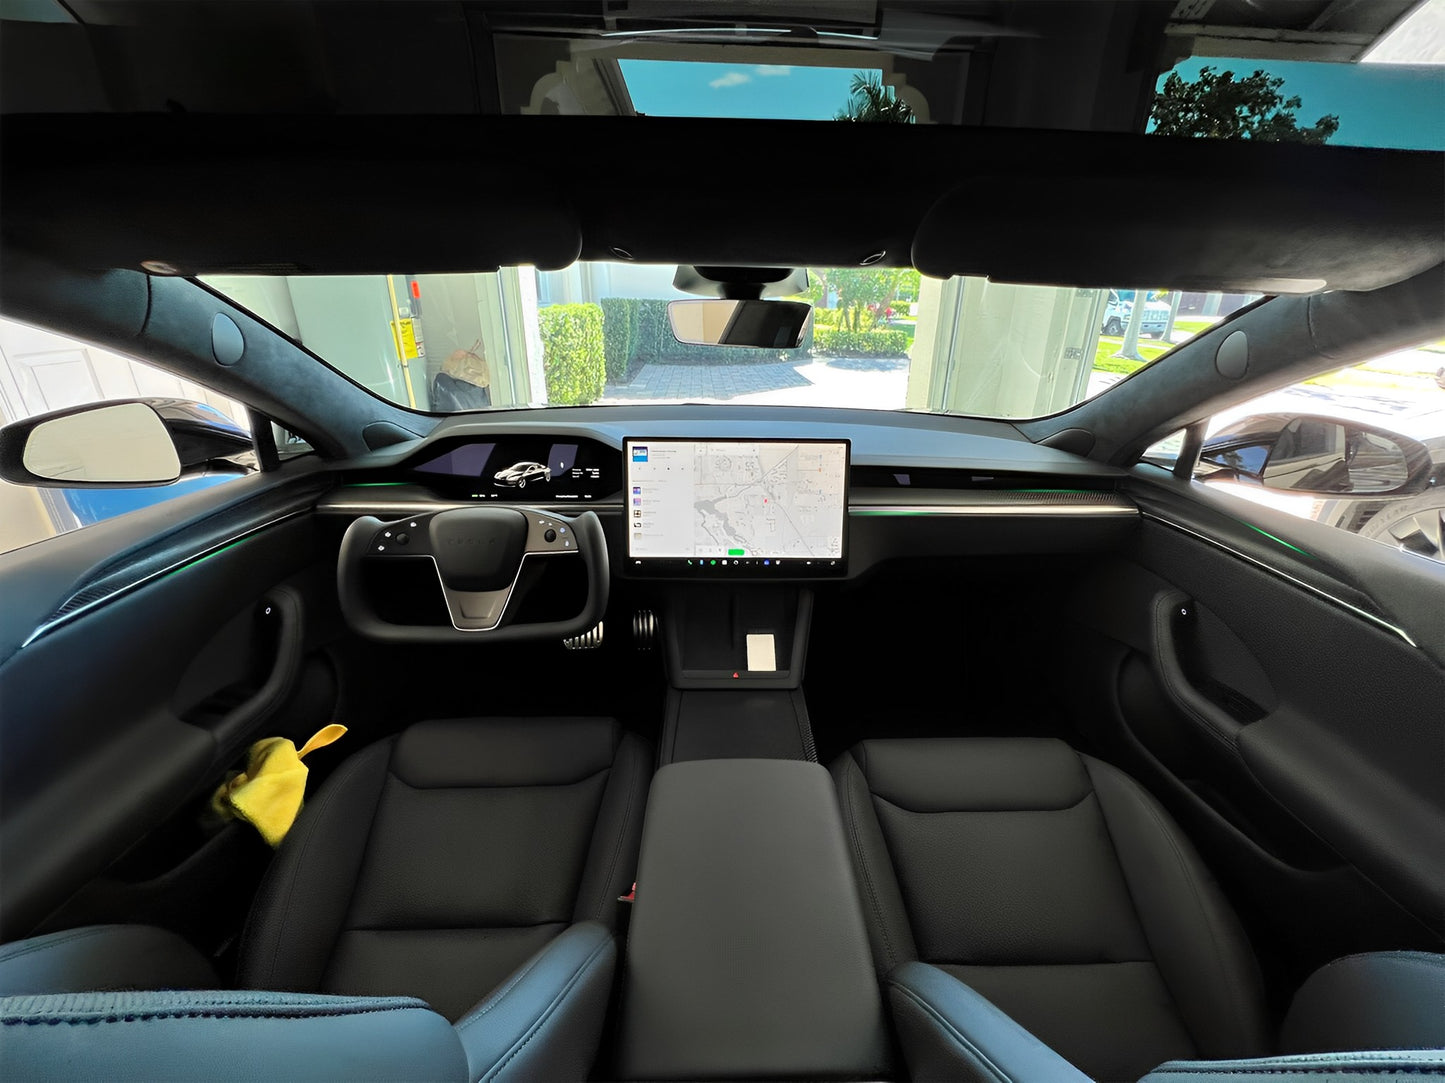 Carbon Fiber Dashboard & Door Trims For 2021+ Tesla Model S / X